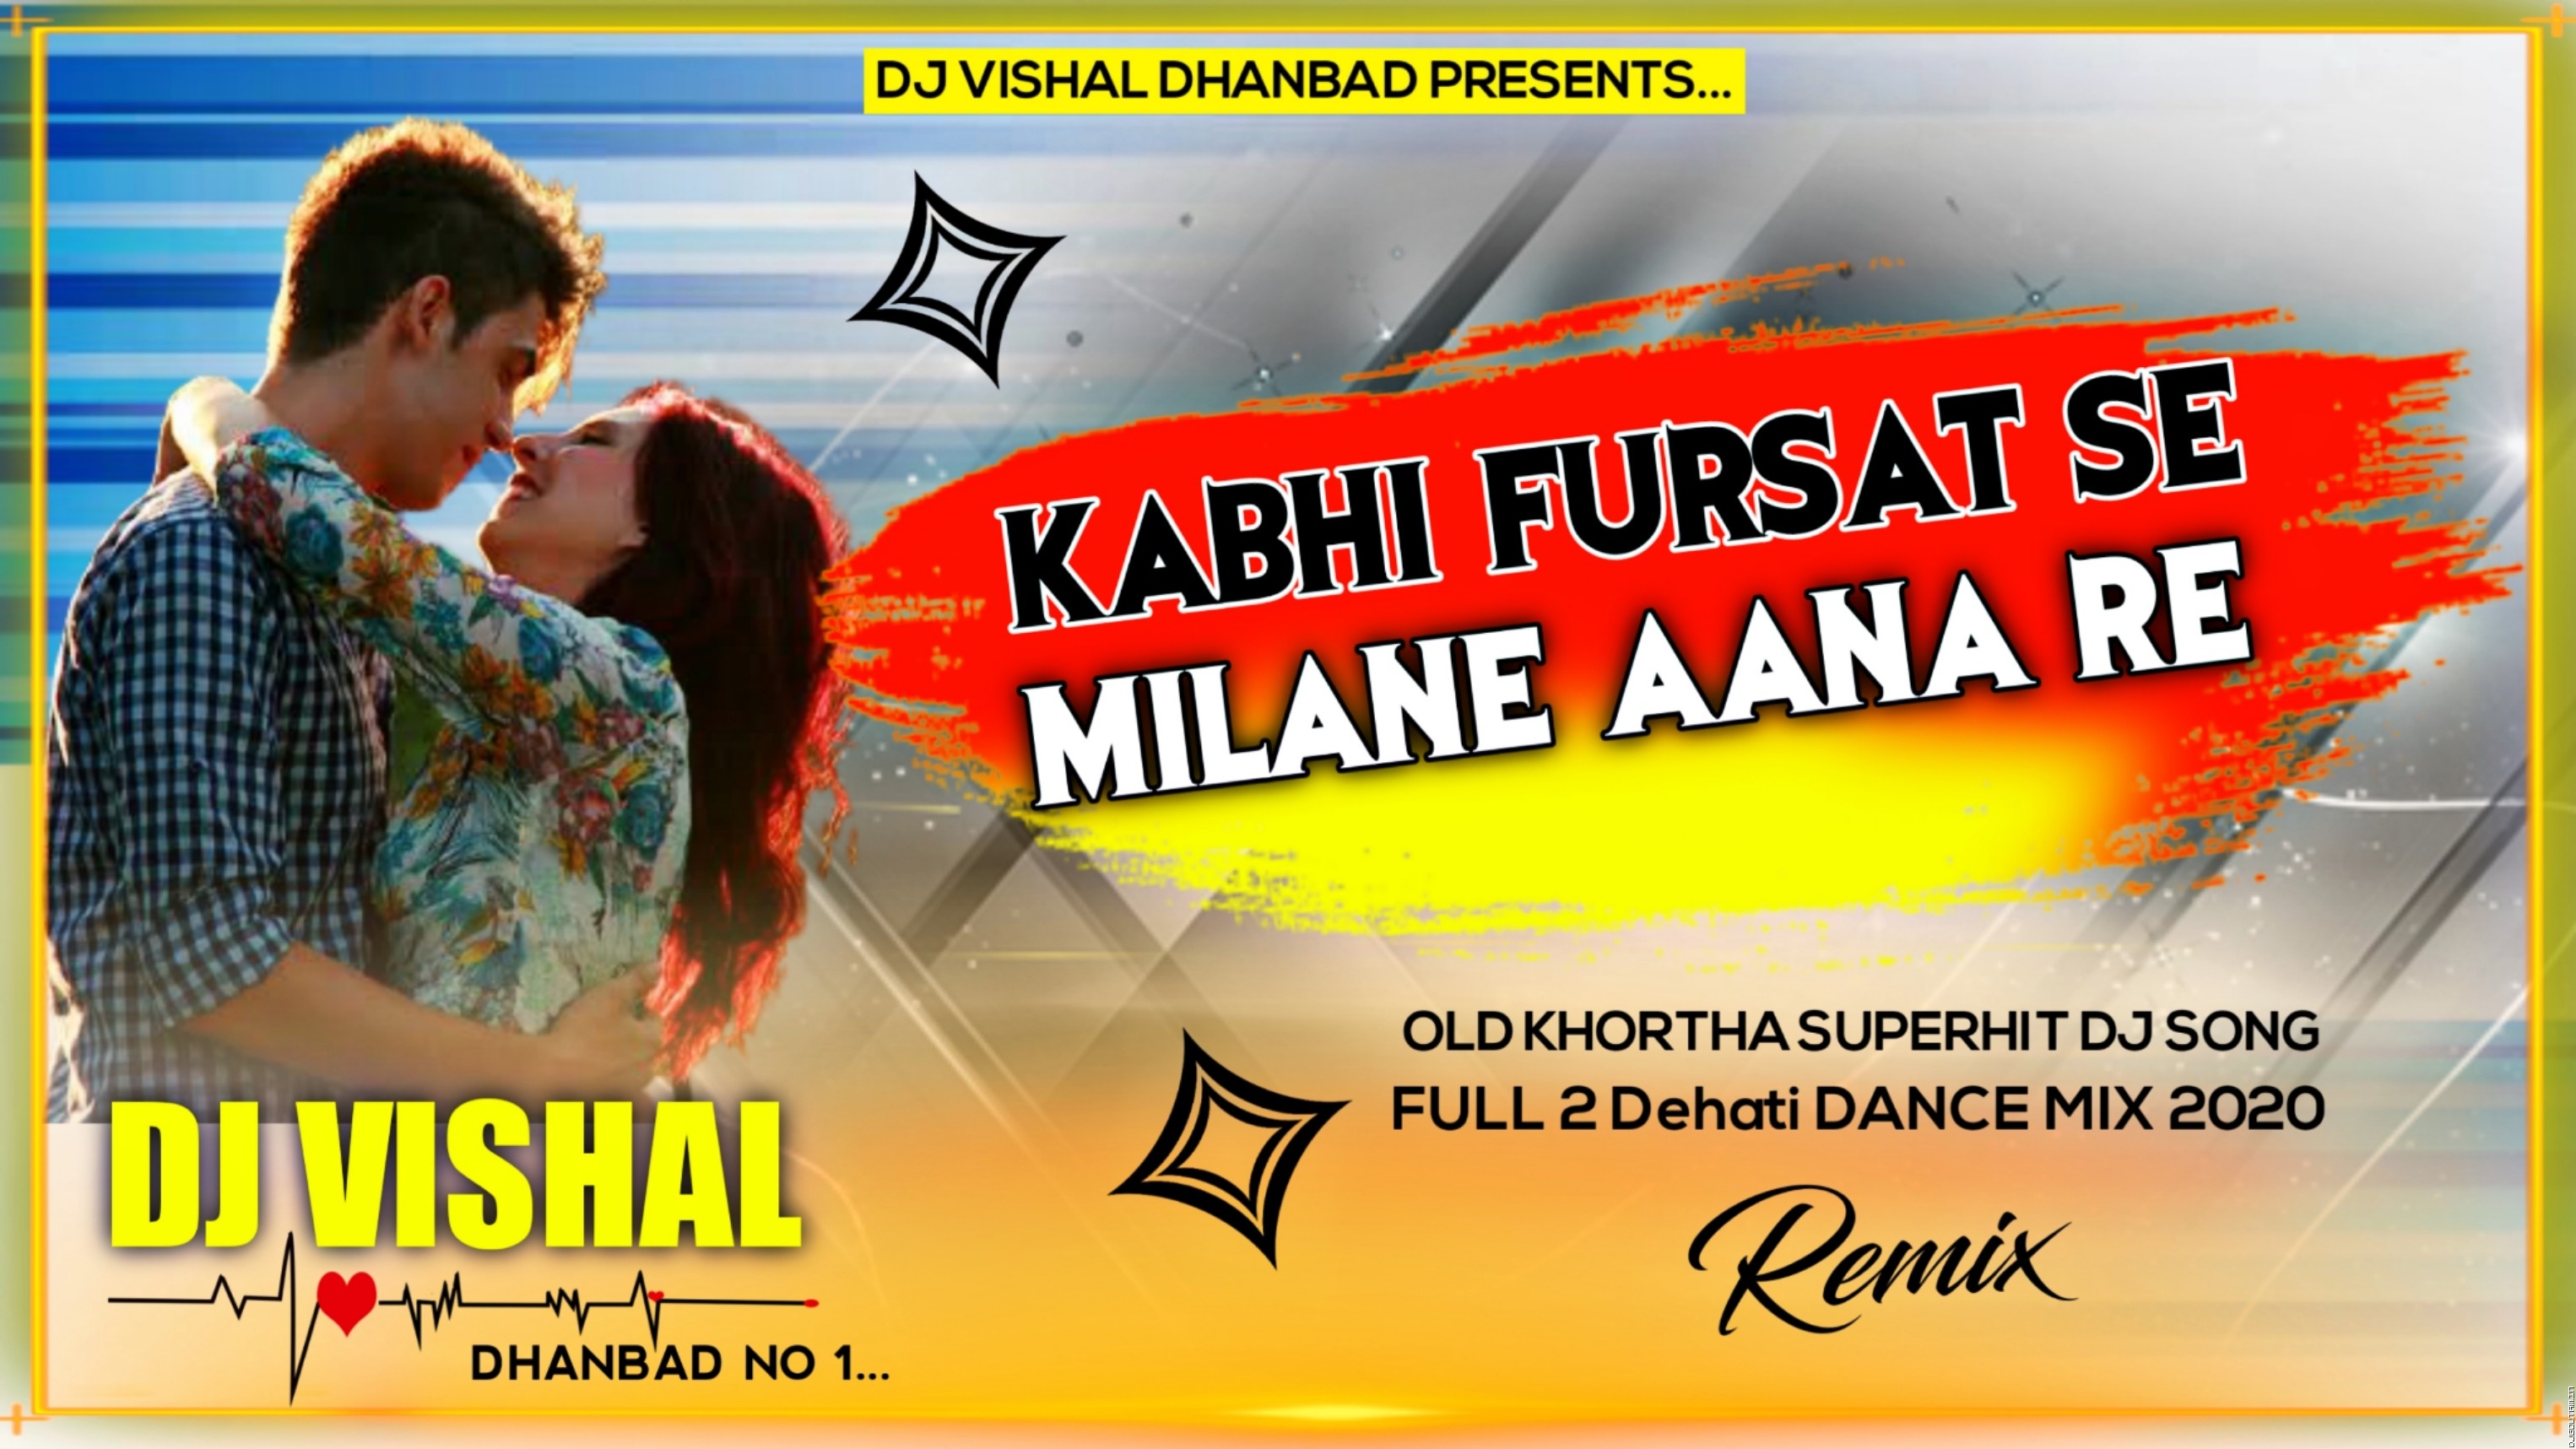 Kabhi_Fursat_Se_Milane_Aana Hard Bass Vs Dehati Dance Mix DjVishal Dhanbad.mp3